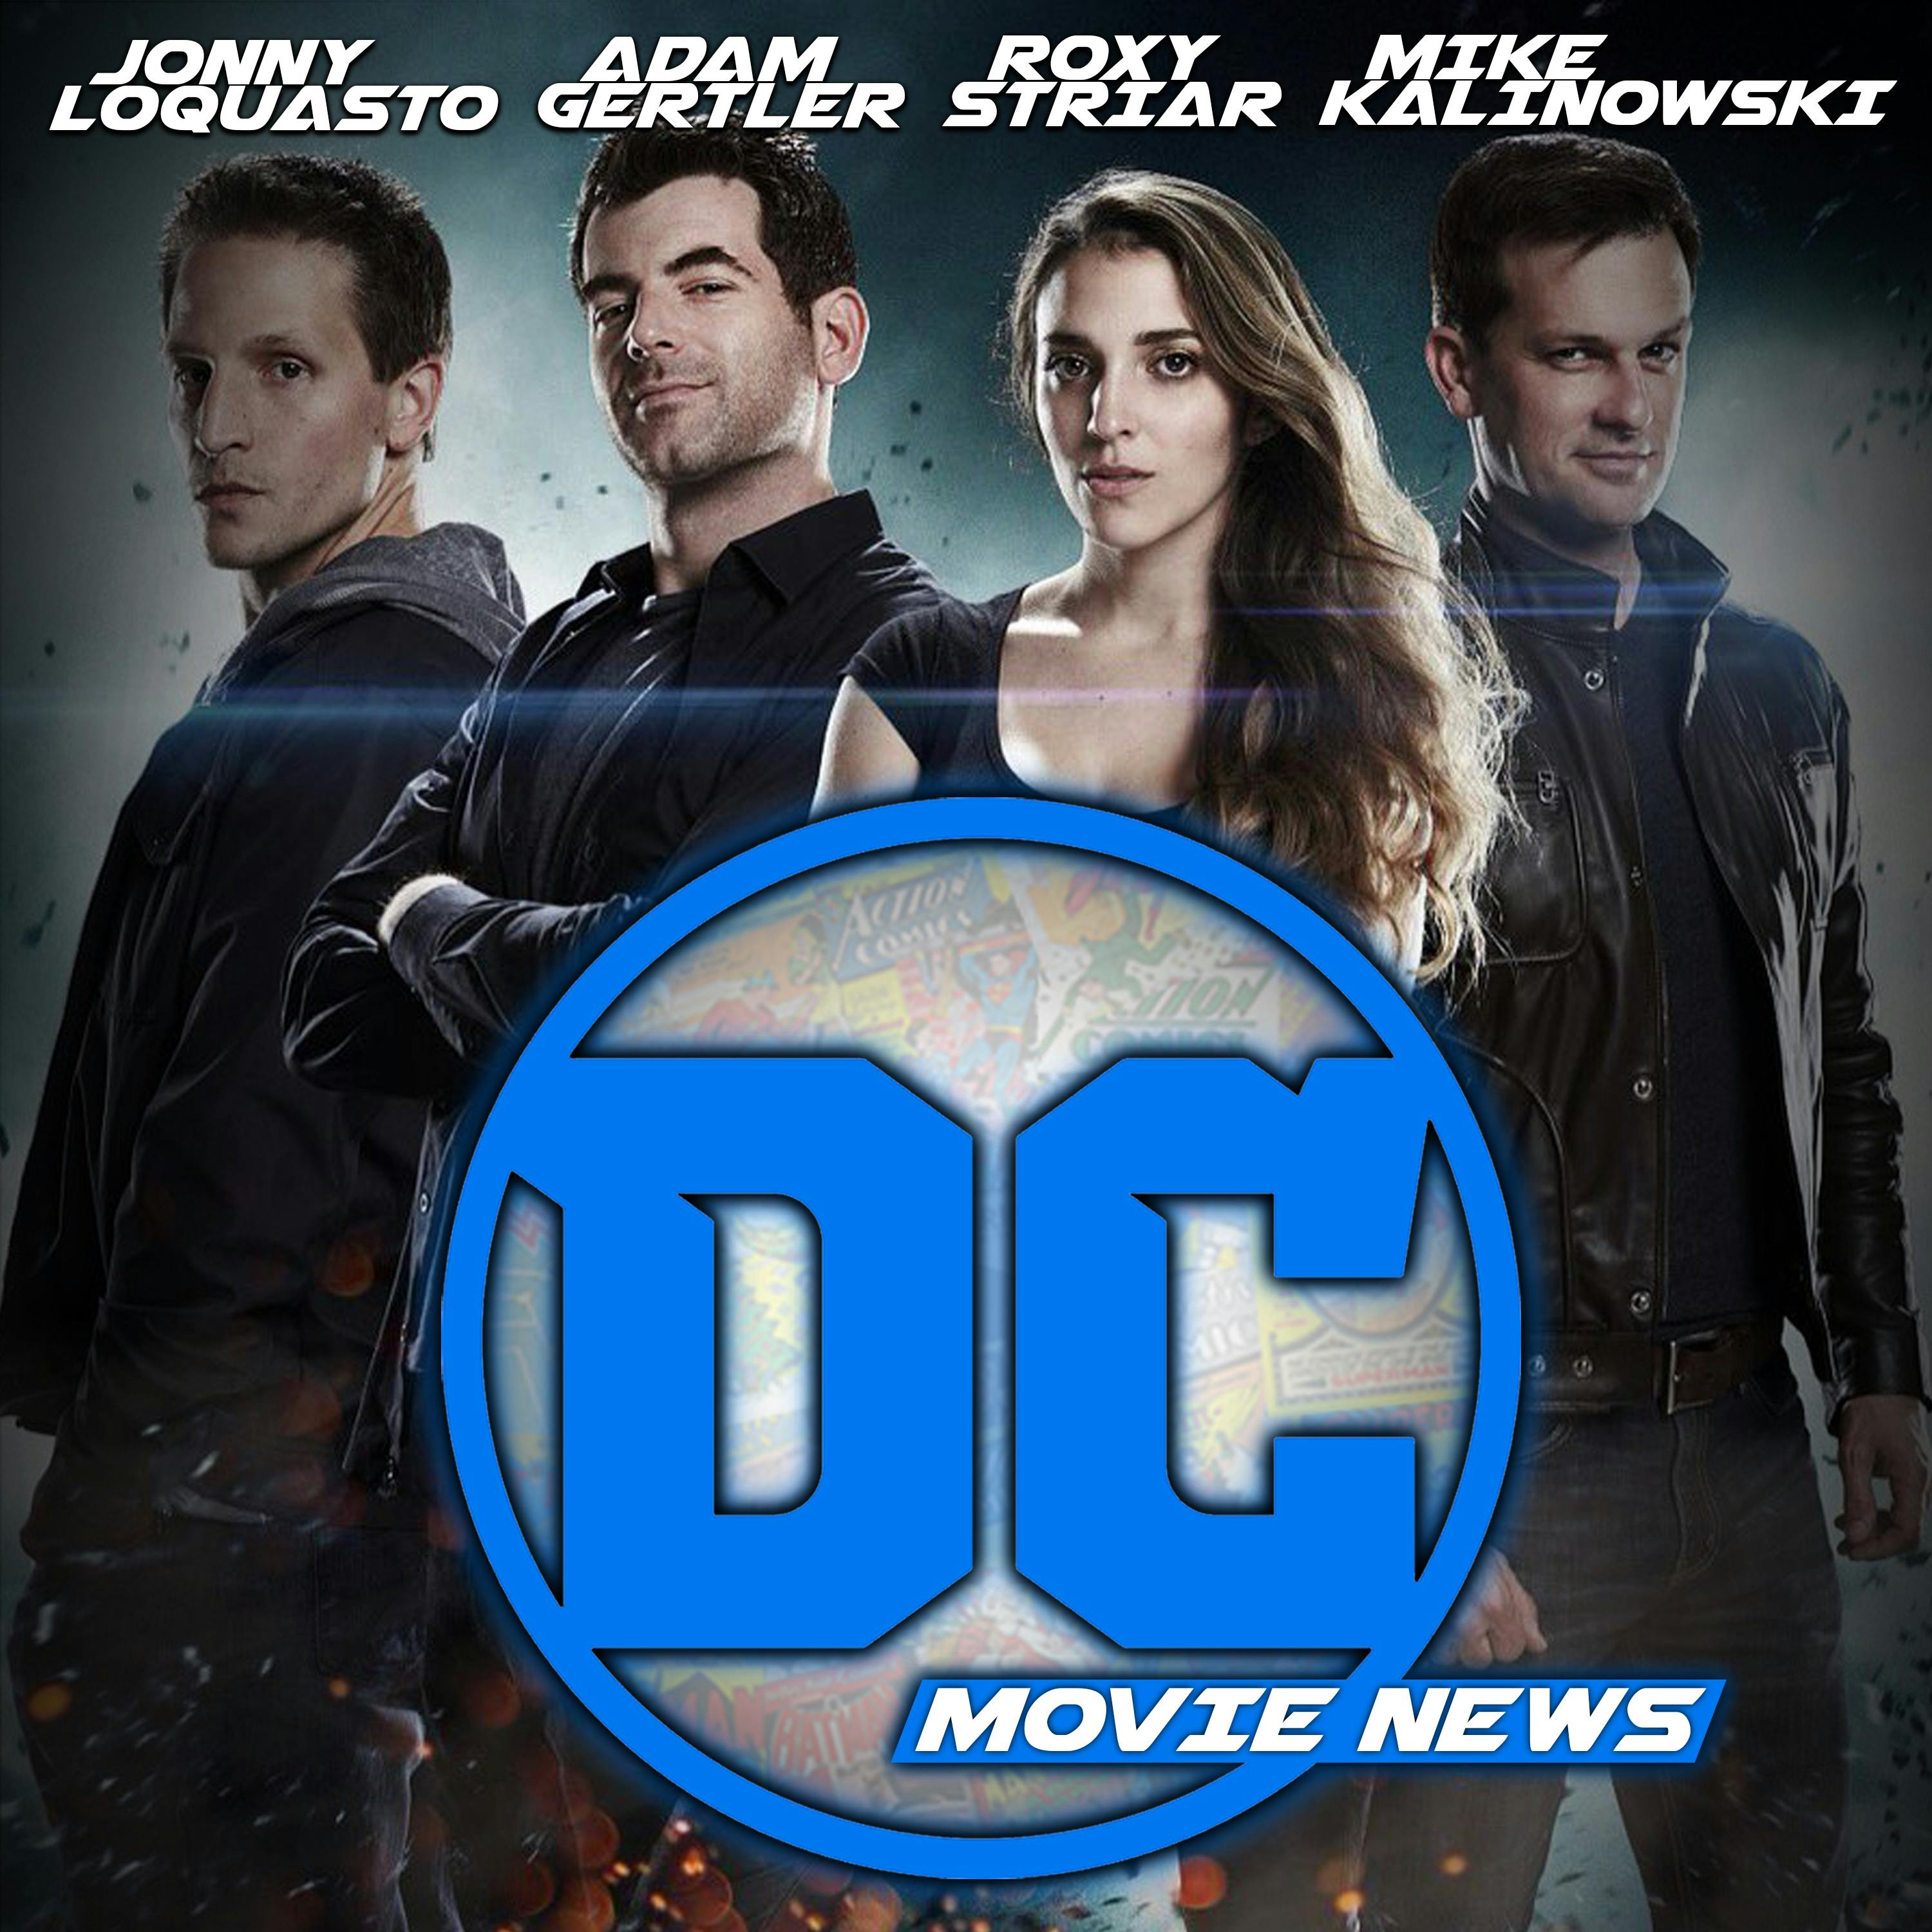 Batman vs. Superman Villain Revealed! – DC Movie News For December 3rd, 2015